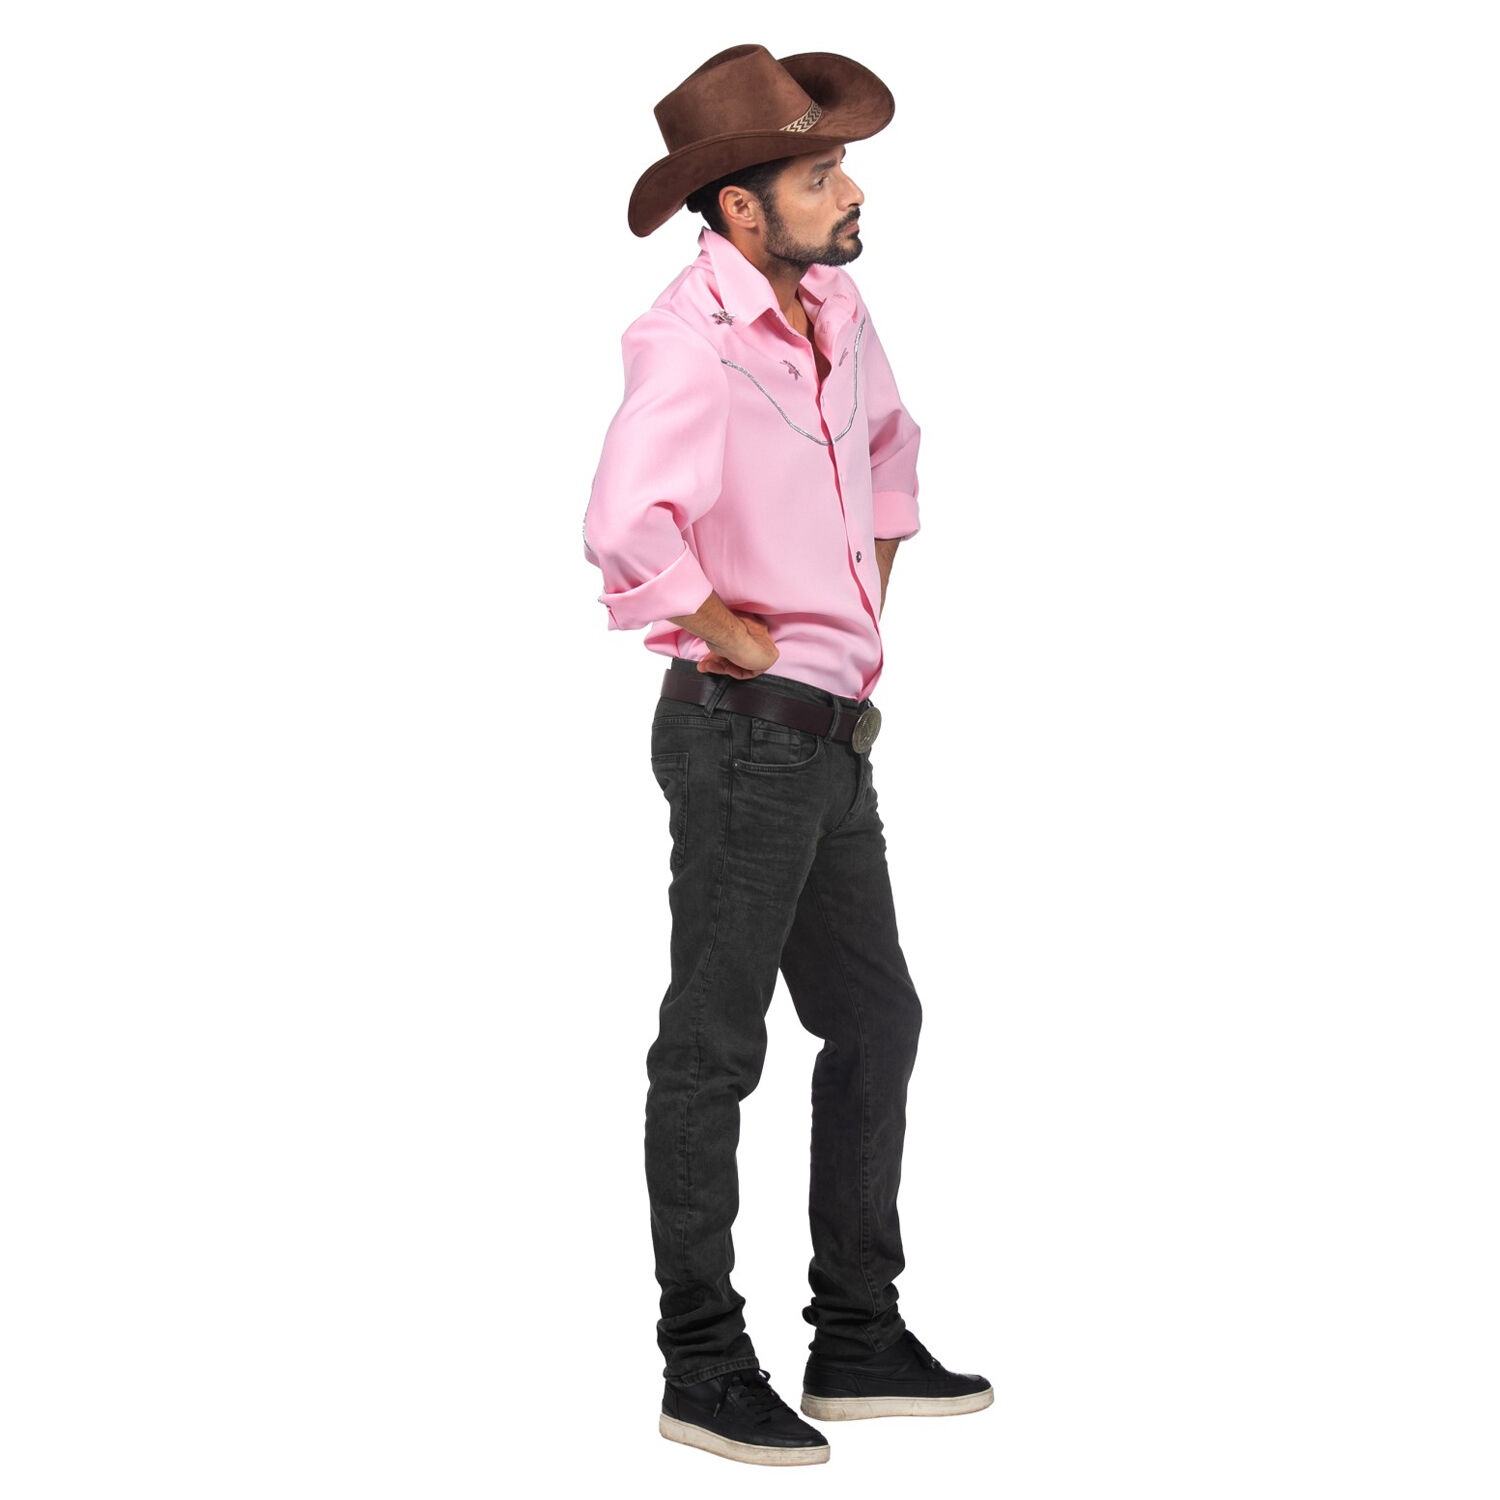 NEU Herren-Kostm Westernhemd rosa, mit silbernen Applikationen, Gr. S Bild 2